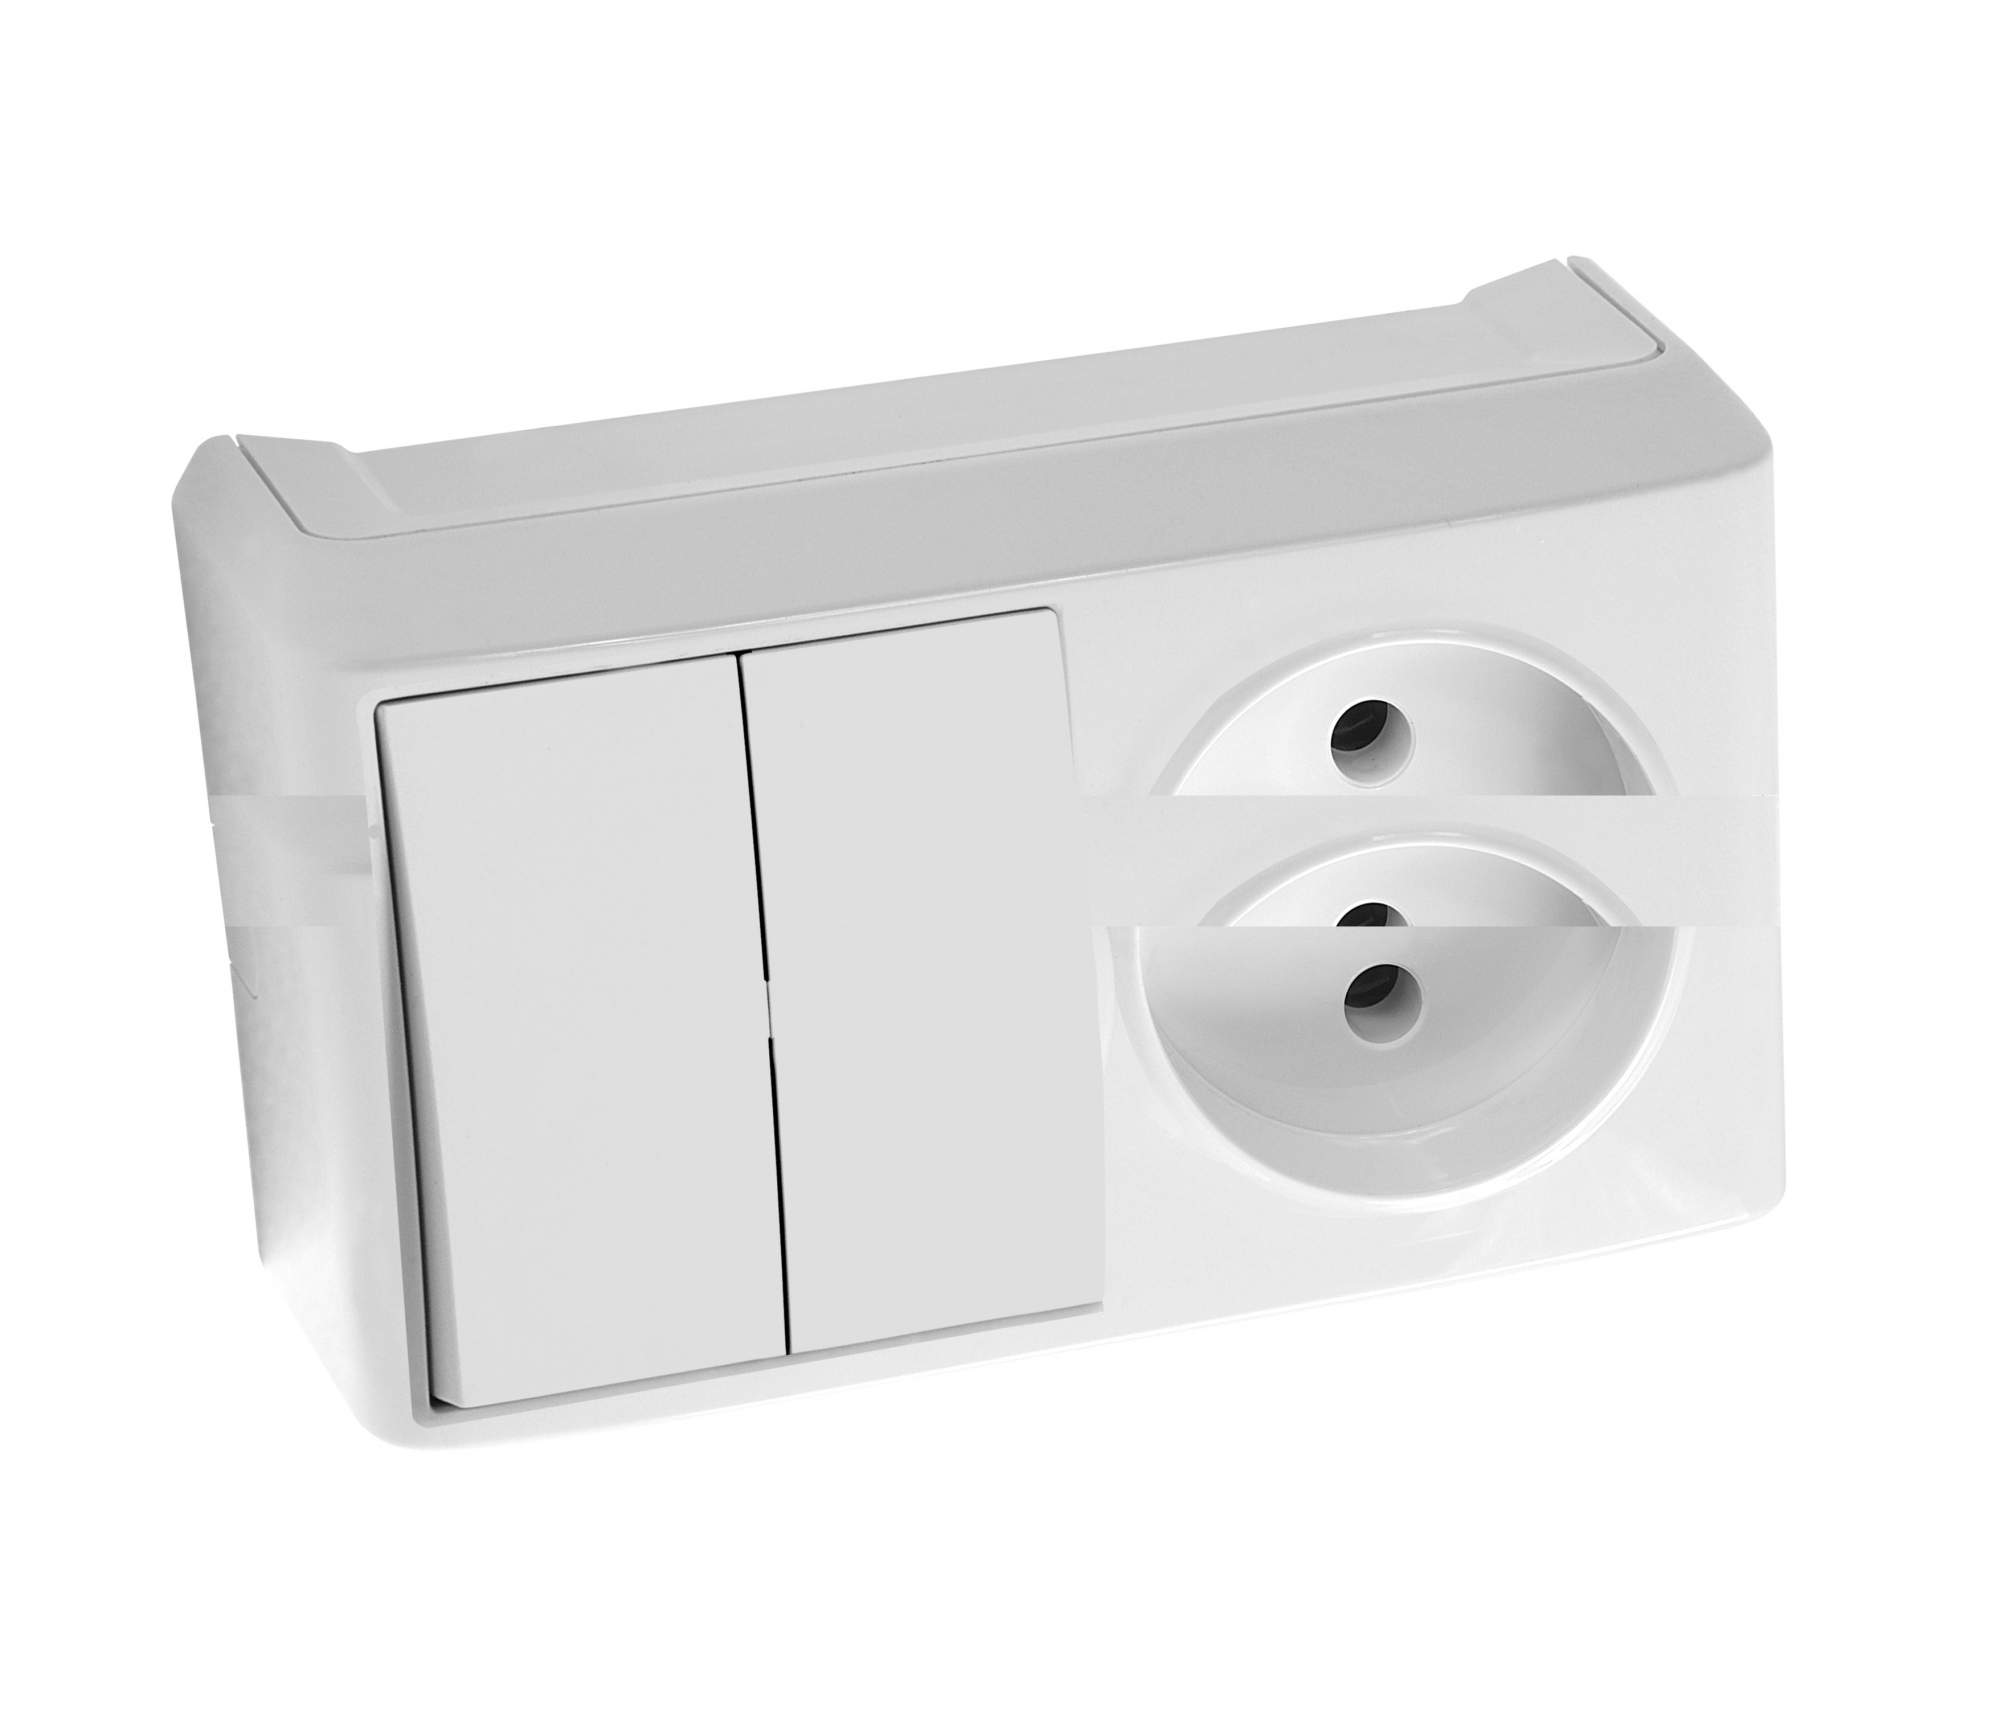 Блок комбинированный Viko двойной выключатель с розеткой, белый накладной, 90681189